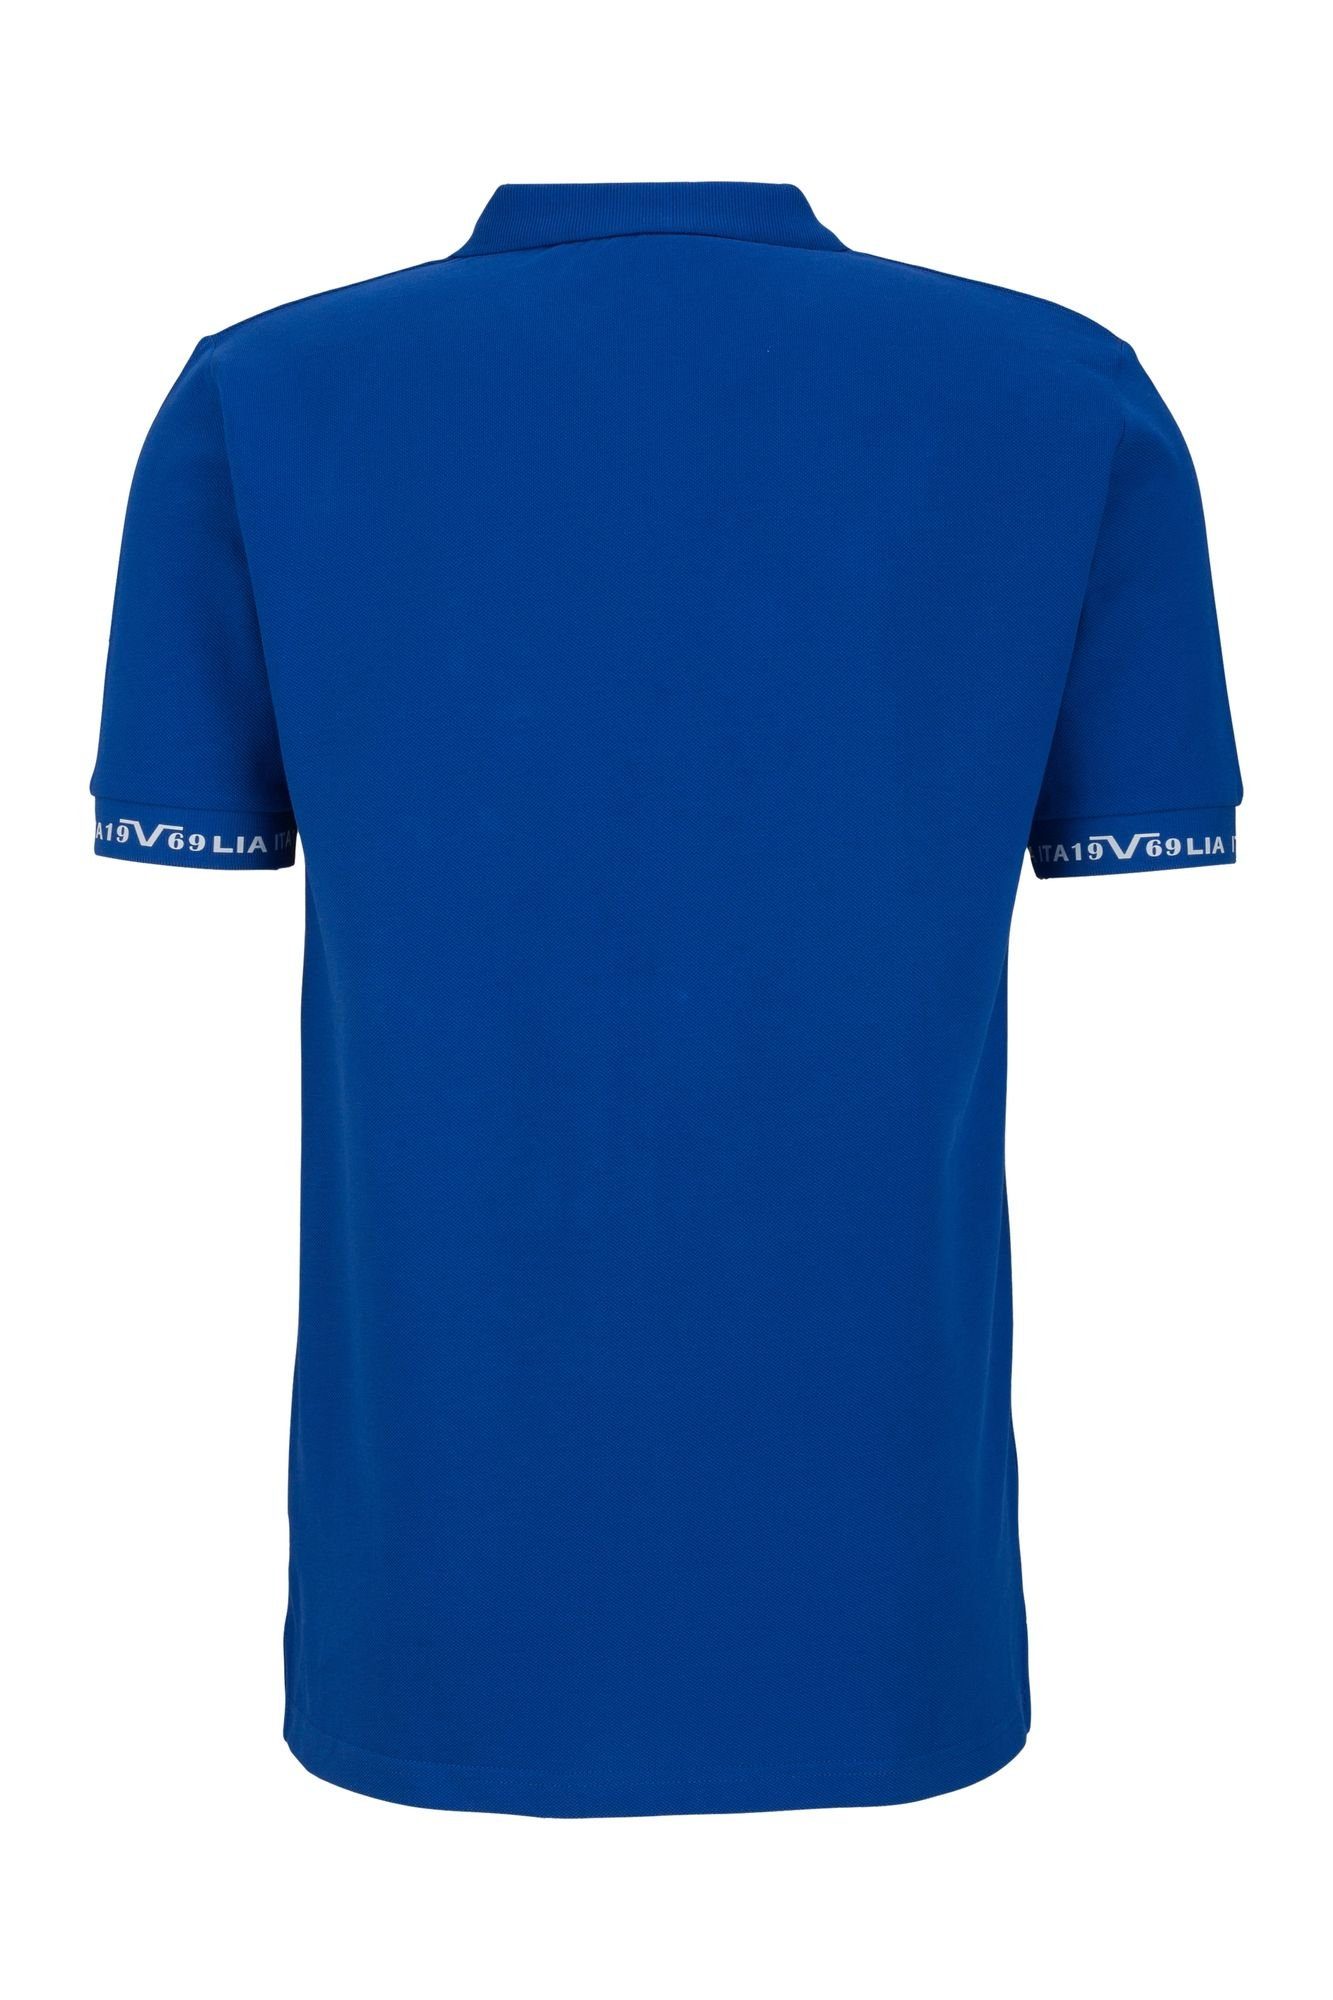 Italia Versace Harry T-Shirt ROYAL by 19V69